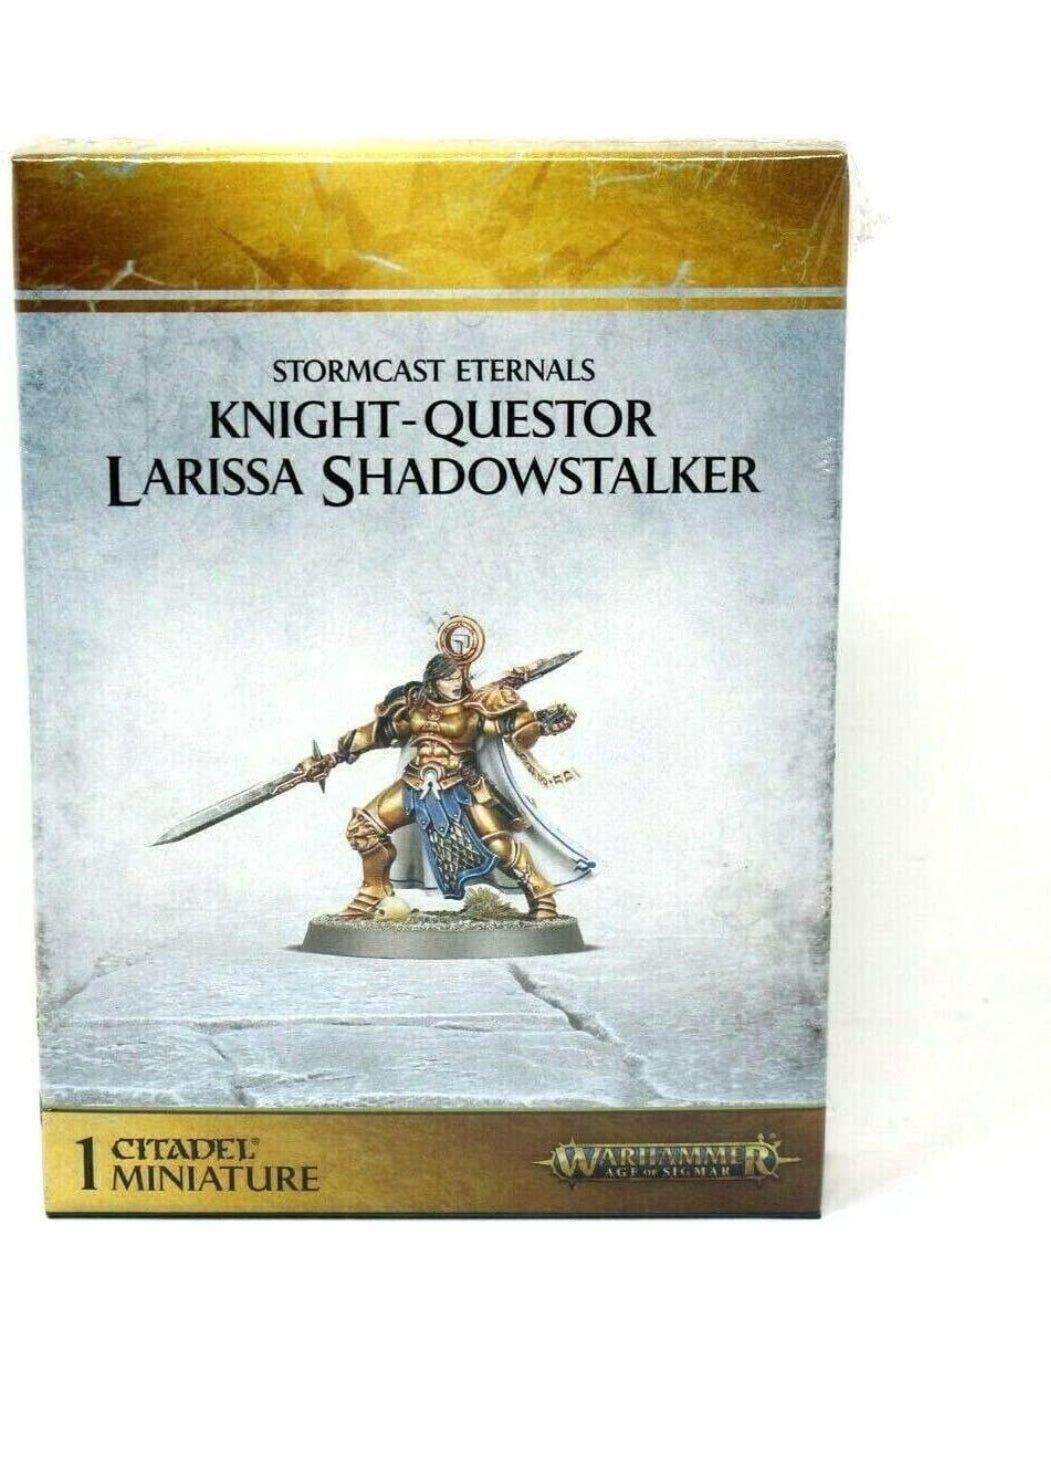 Warhammer Age of Sigmar: Knight-Questor Larissa Shadowstalker